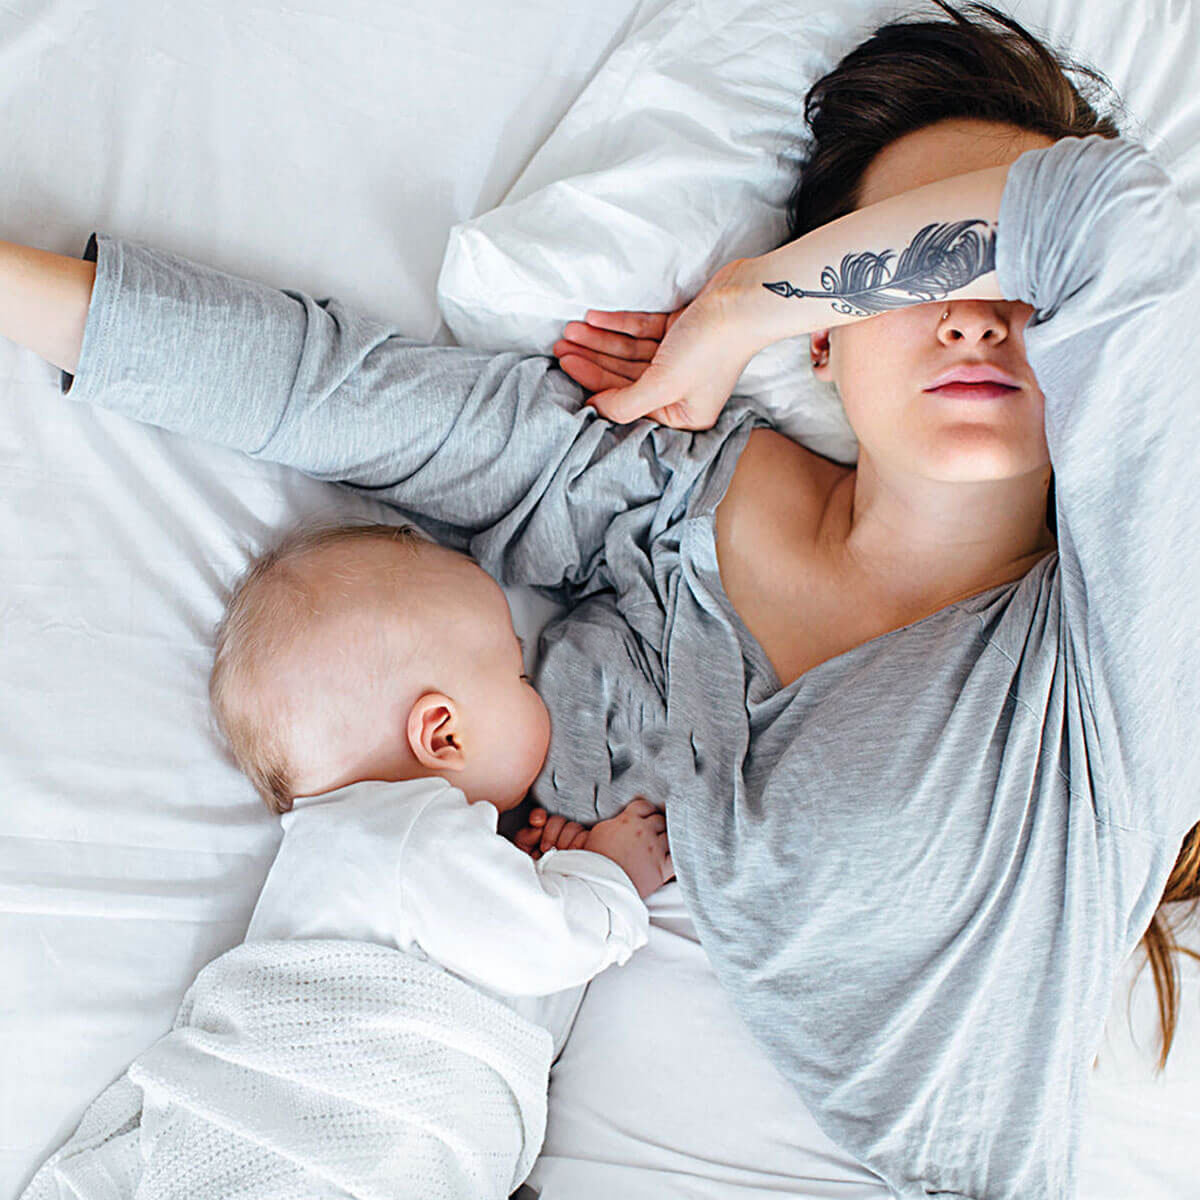 آیا خوابیدن مادر در زمان شیردهی خطرساز است؟